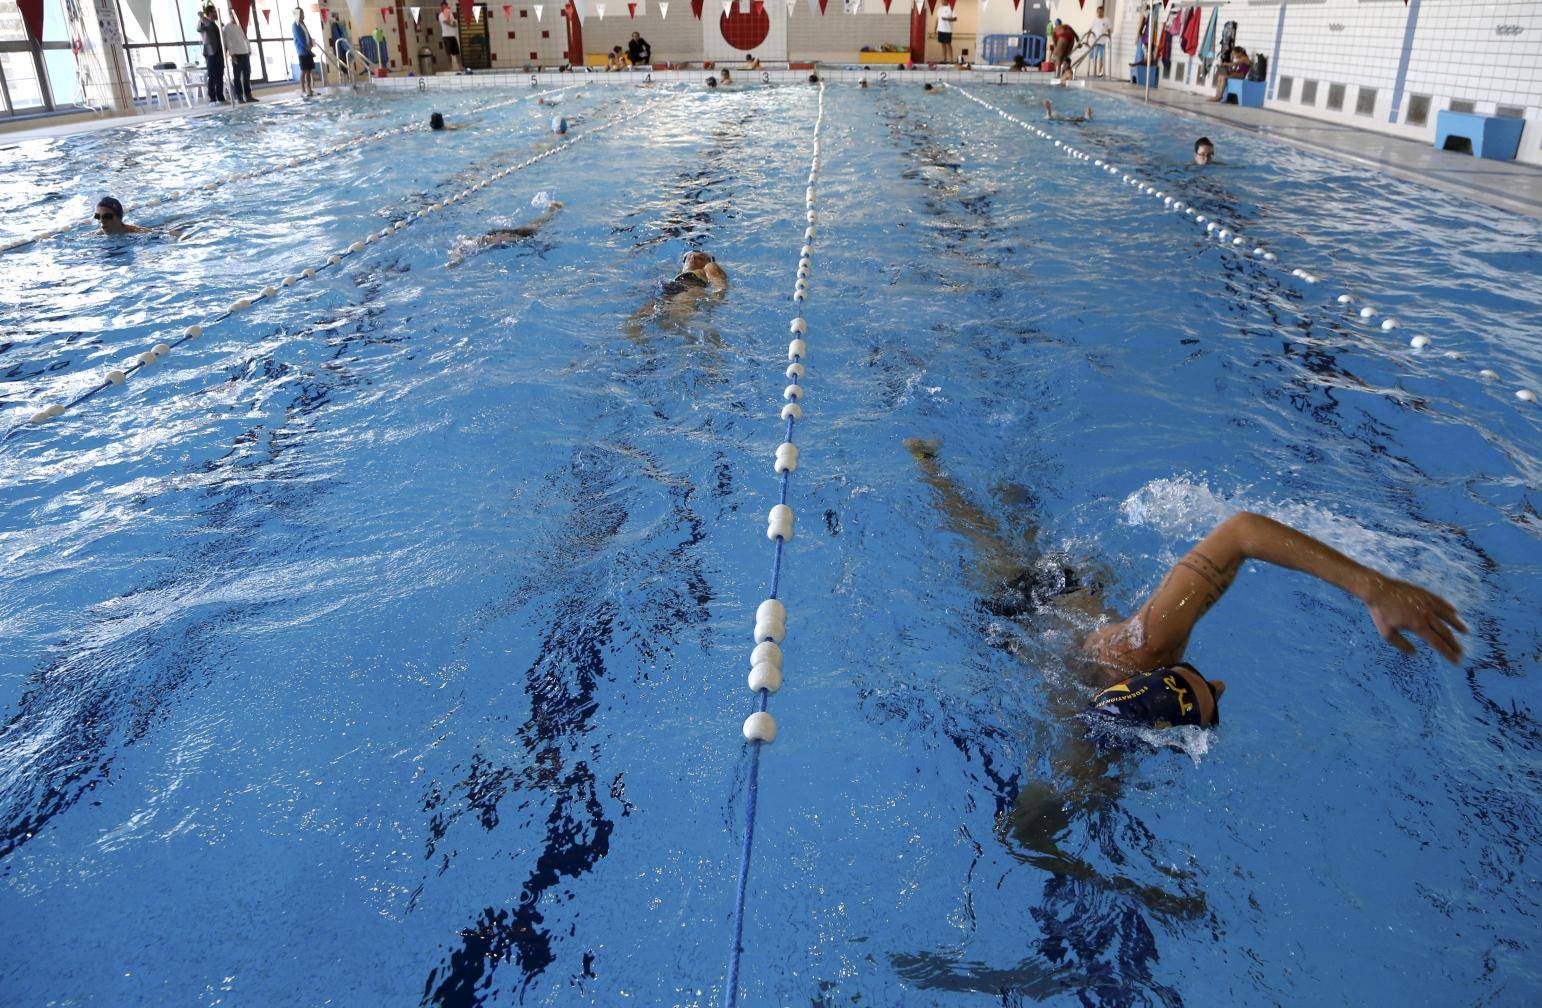 Coup de froid confirmé dans les piscines françaises : 70% ont baissé d'au moins 1 degré